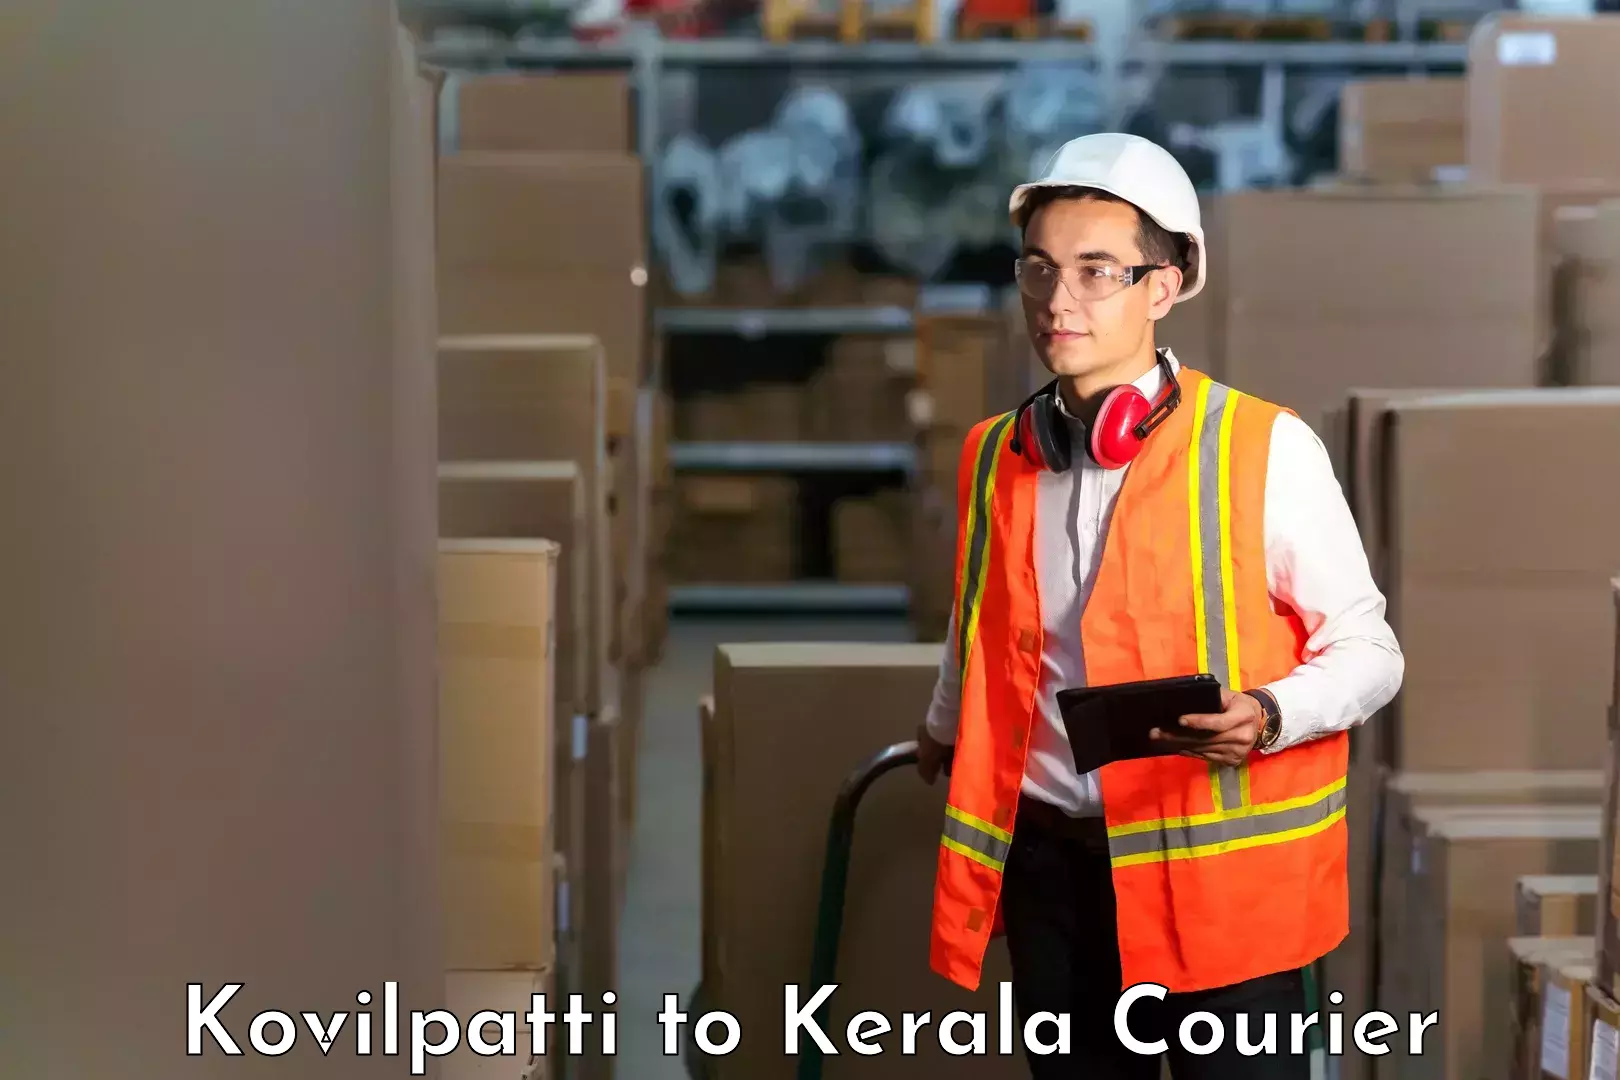 Premium delivery services Kovilpatti to Calicut